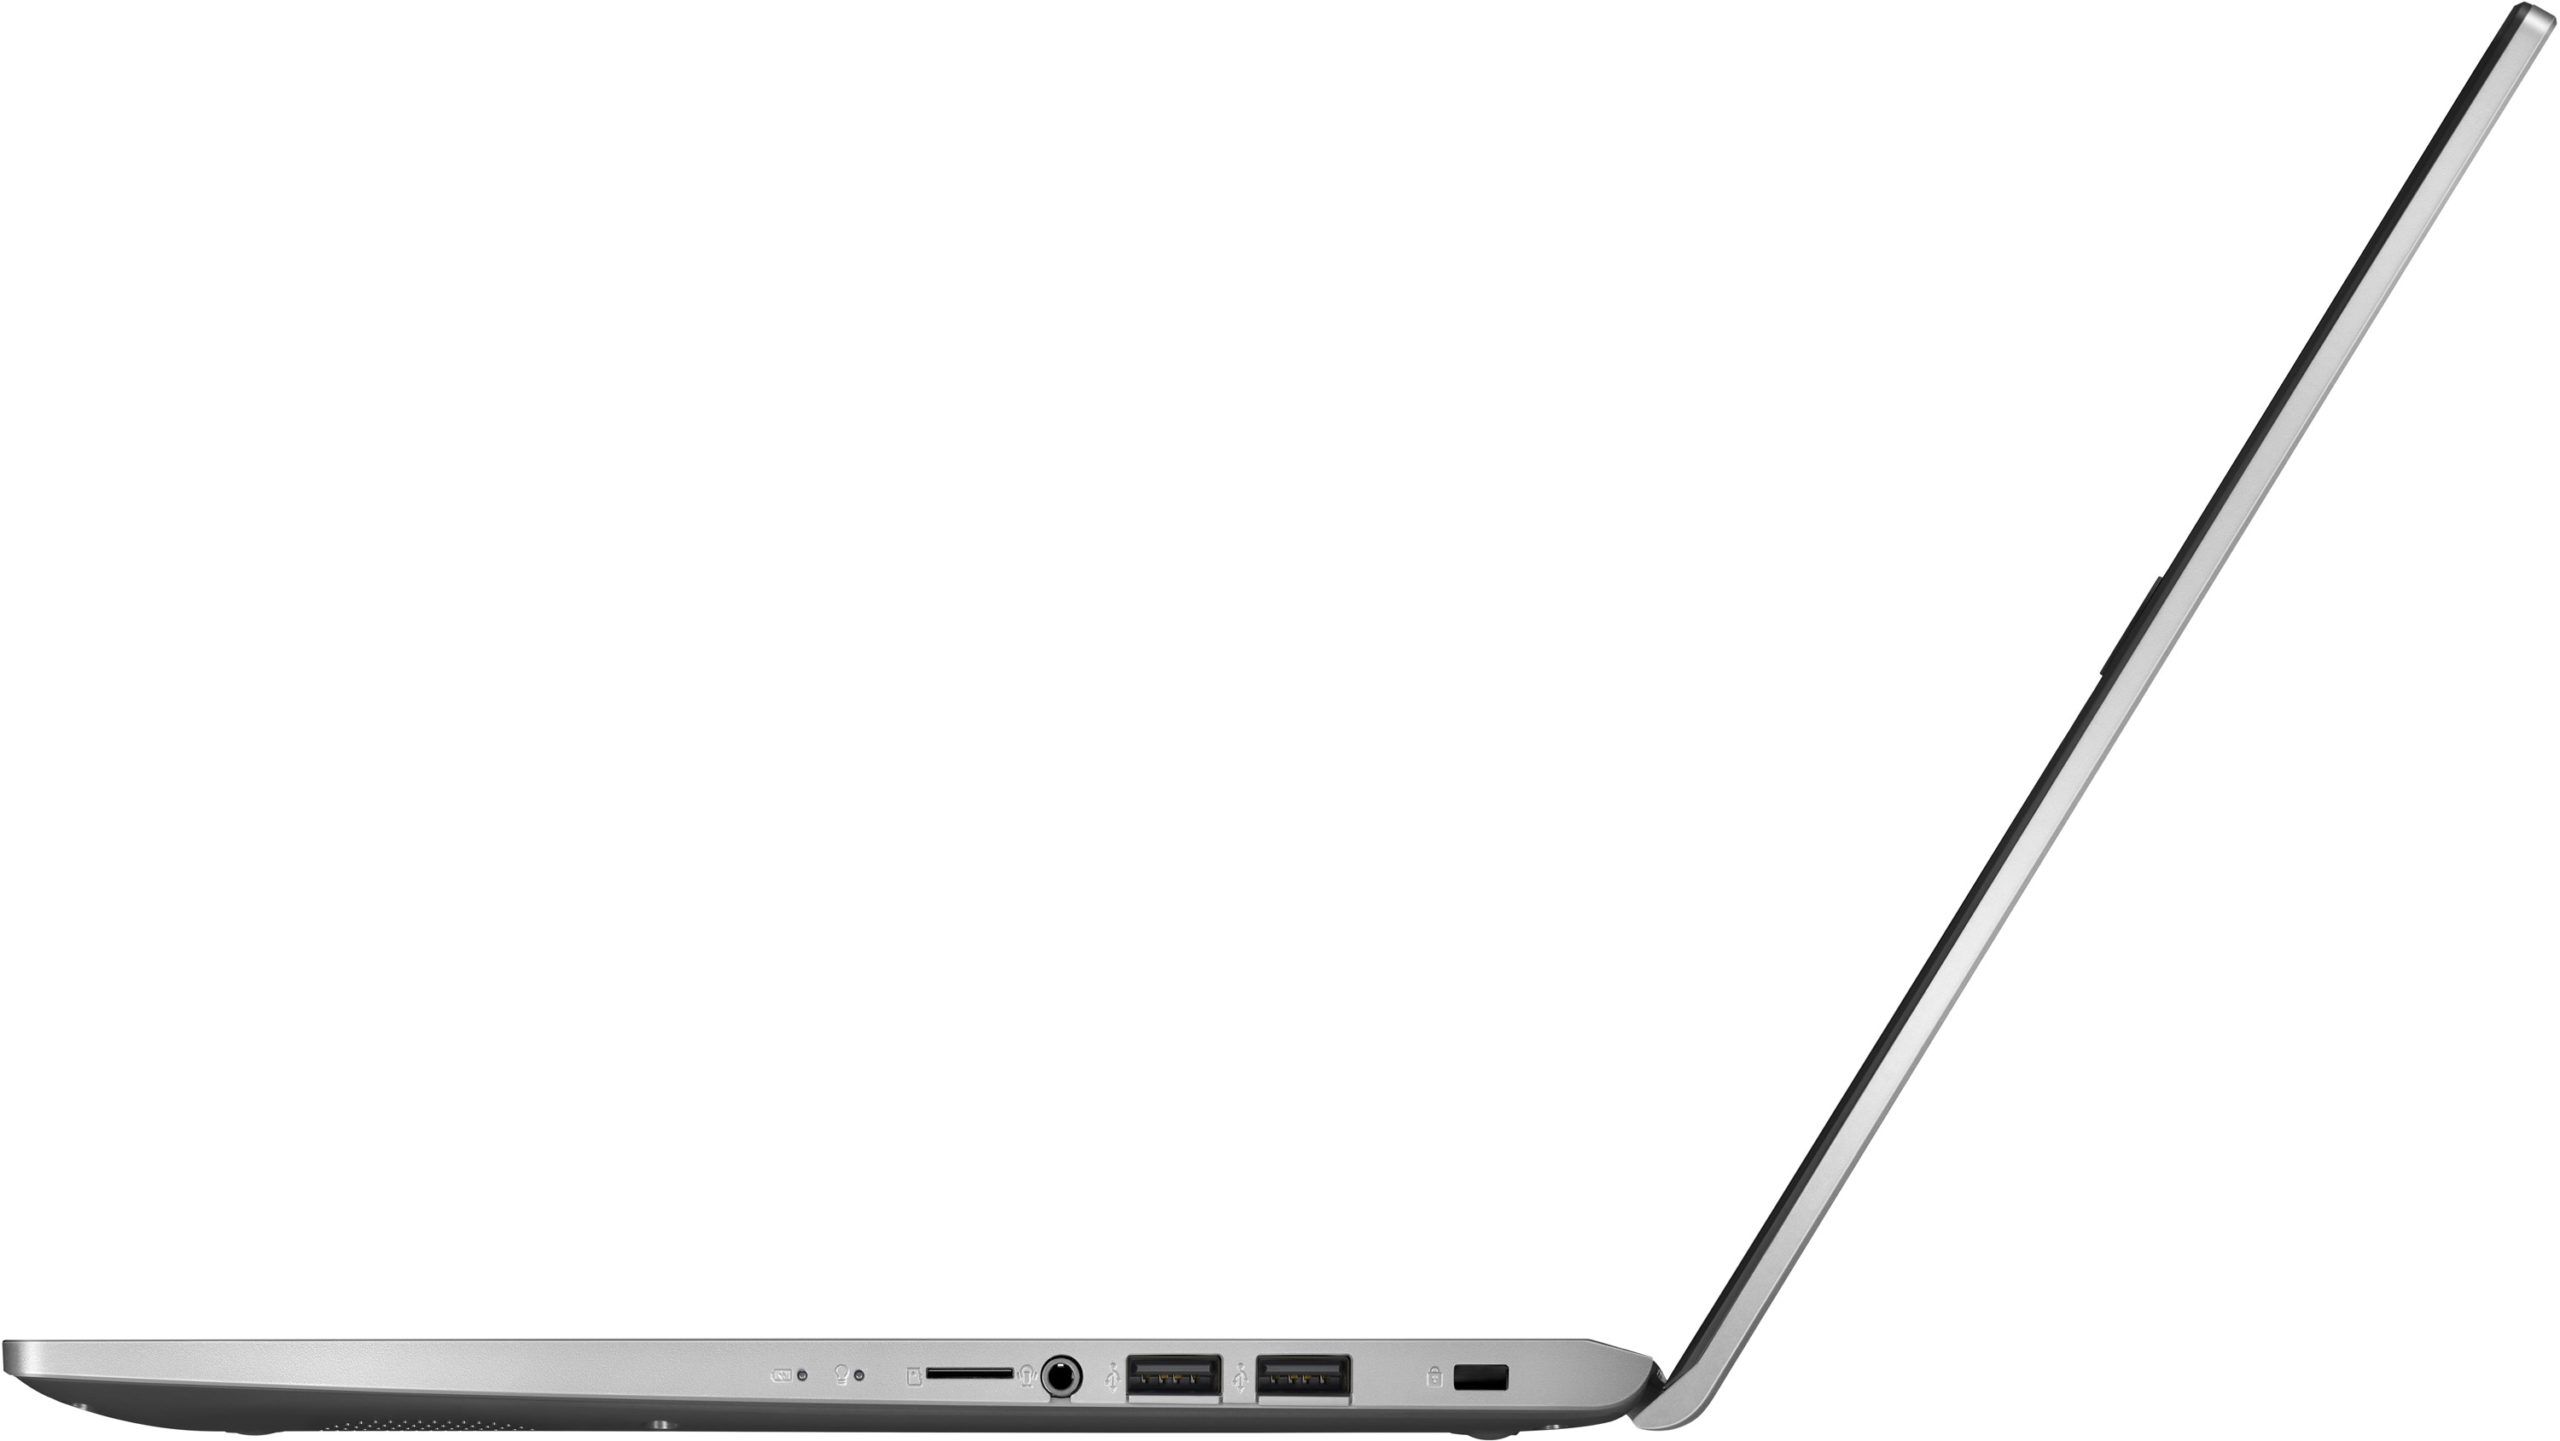 X515JA BQ2690WS Asus Laptop 06 scaled 1